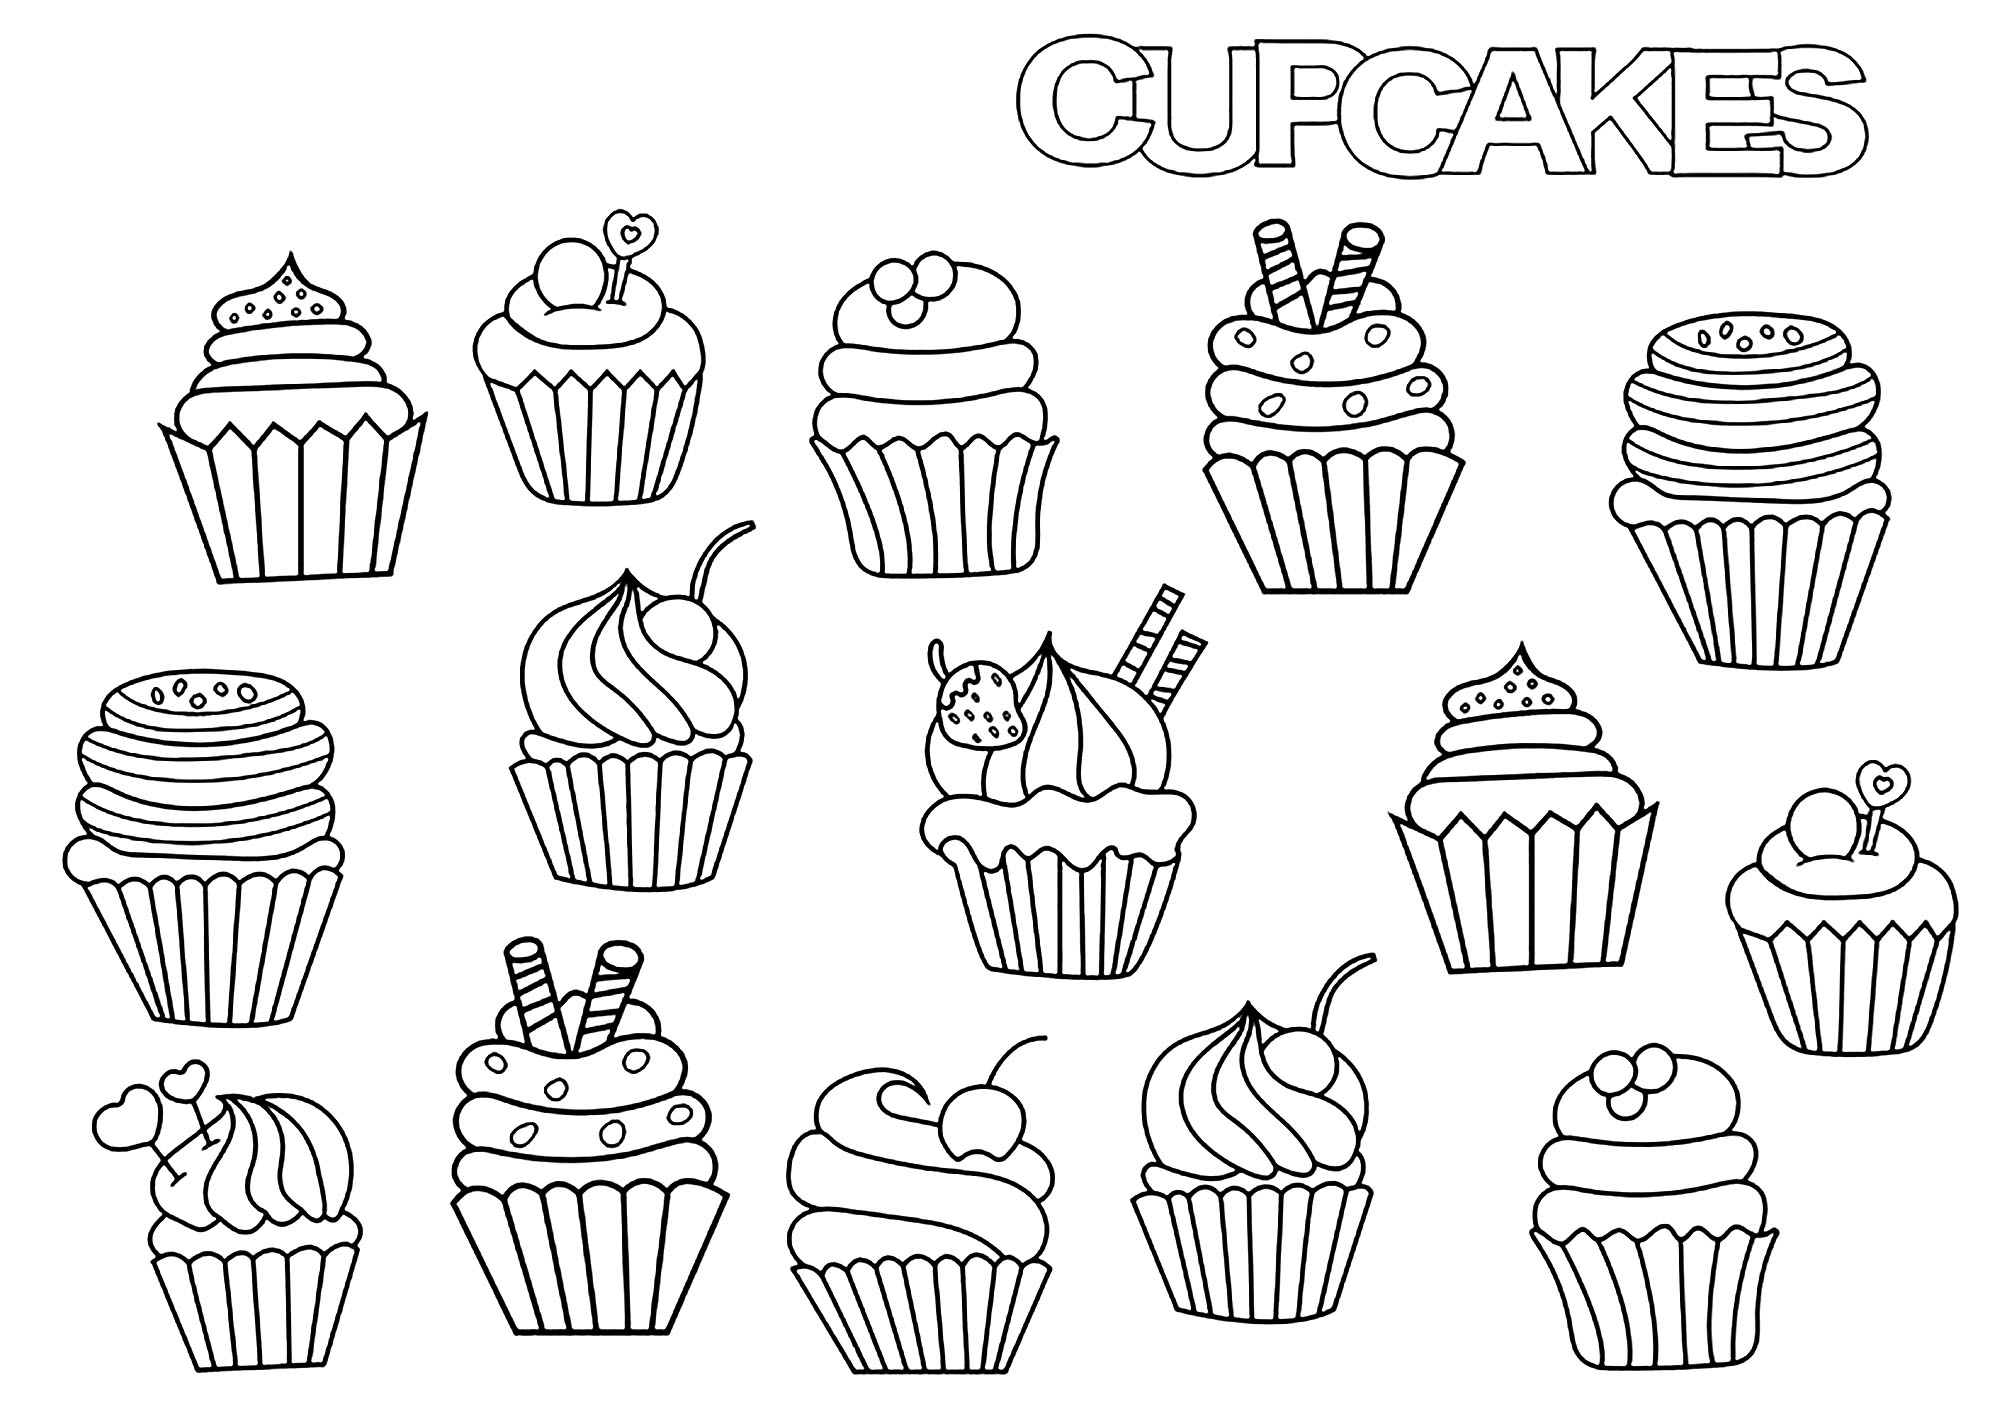 Un petit mix de cupcakes pour satisfaire les papilles !, Source : 123rf   Artiste : Milana Adams